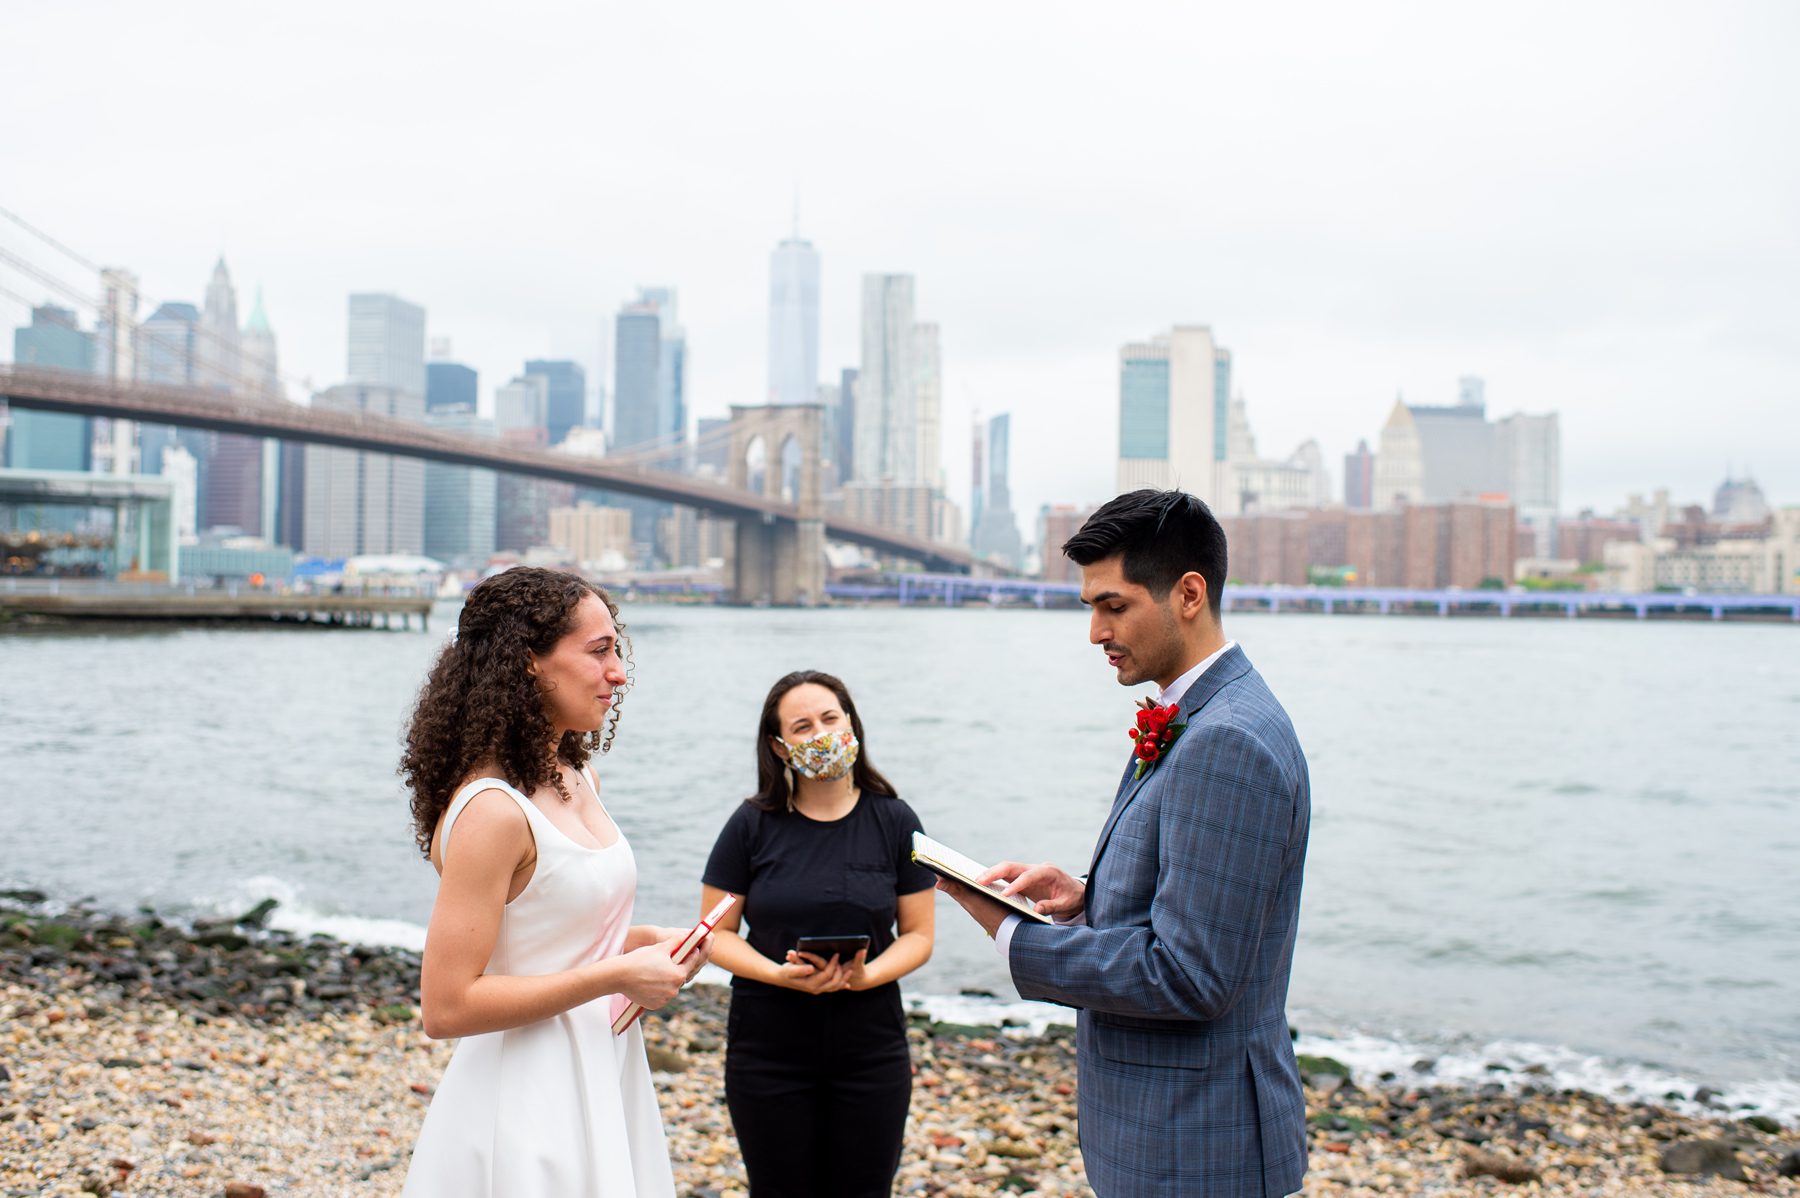 Brooklyn Bridge Park Wedding During Covid